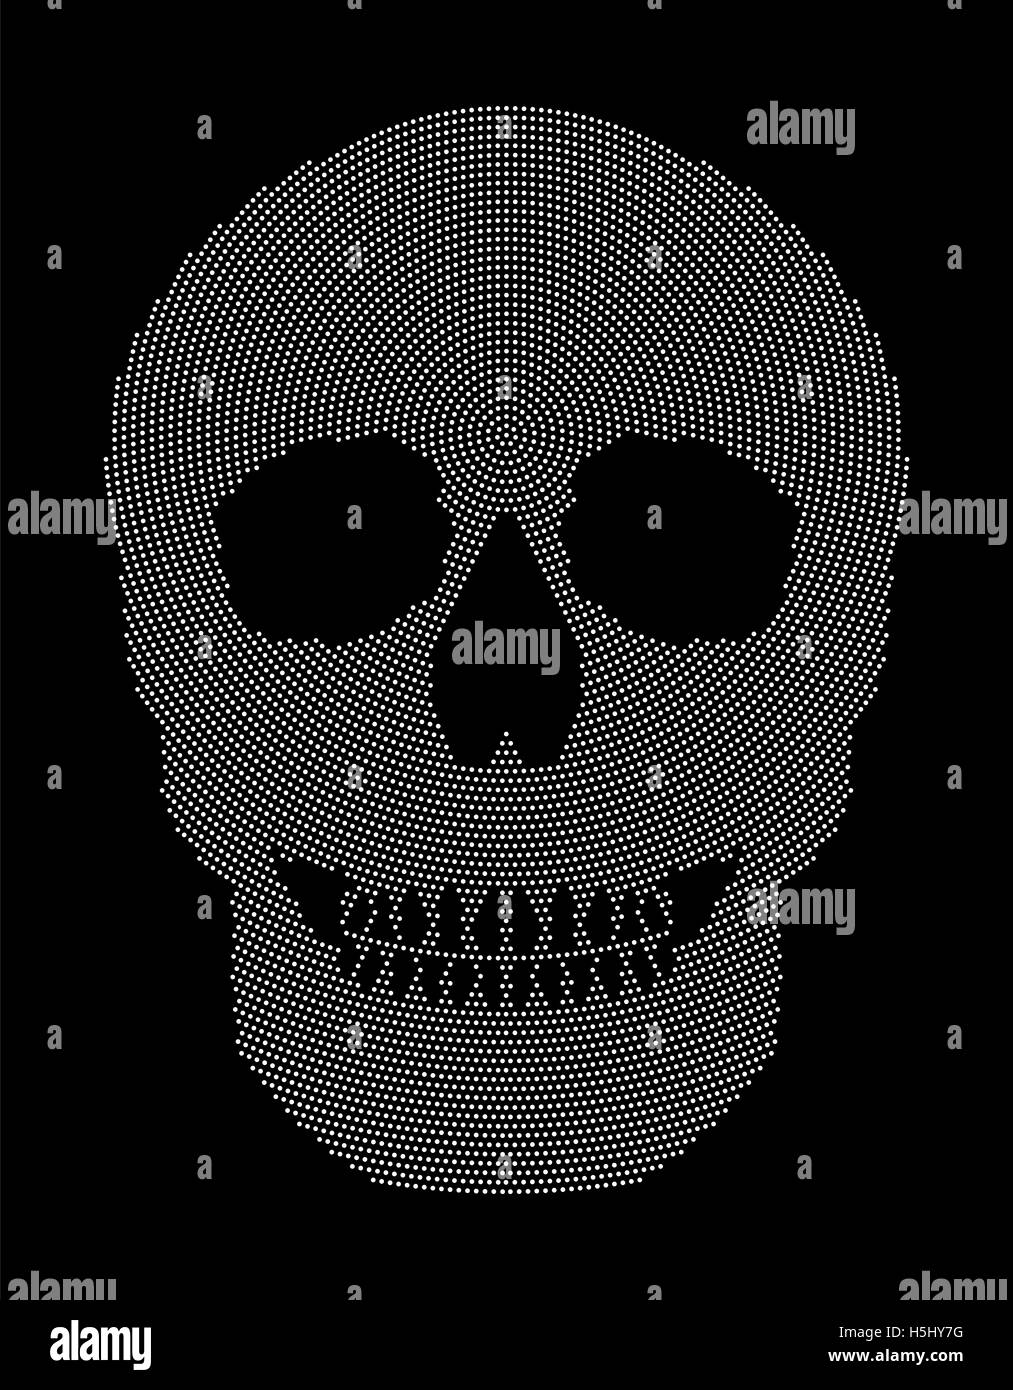 Cranio radiale pattern a punti. Simbolo della struttura ossea di un capo di uno scheletro. Formata da puntini bianchi. Foto Stock